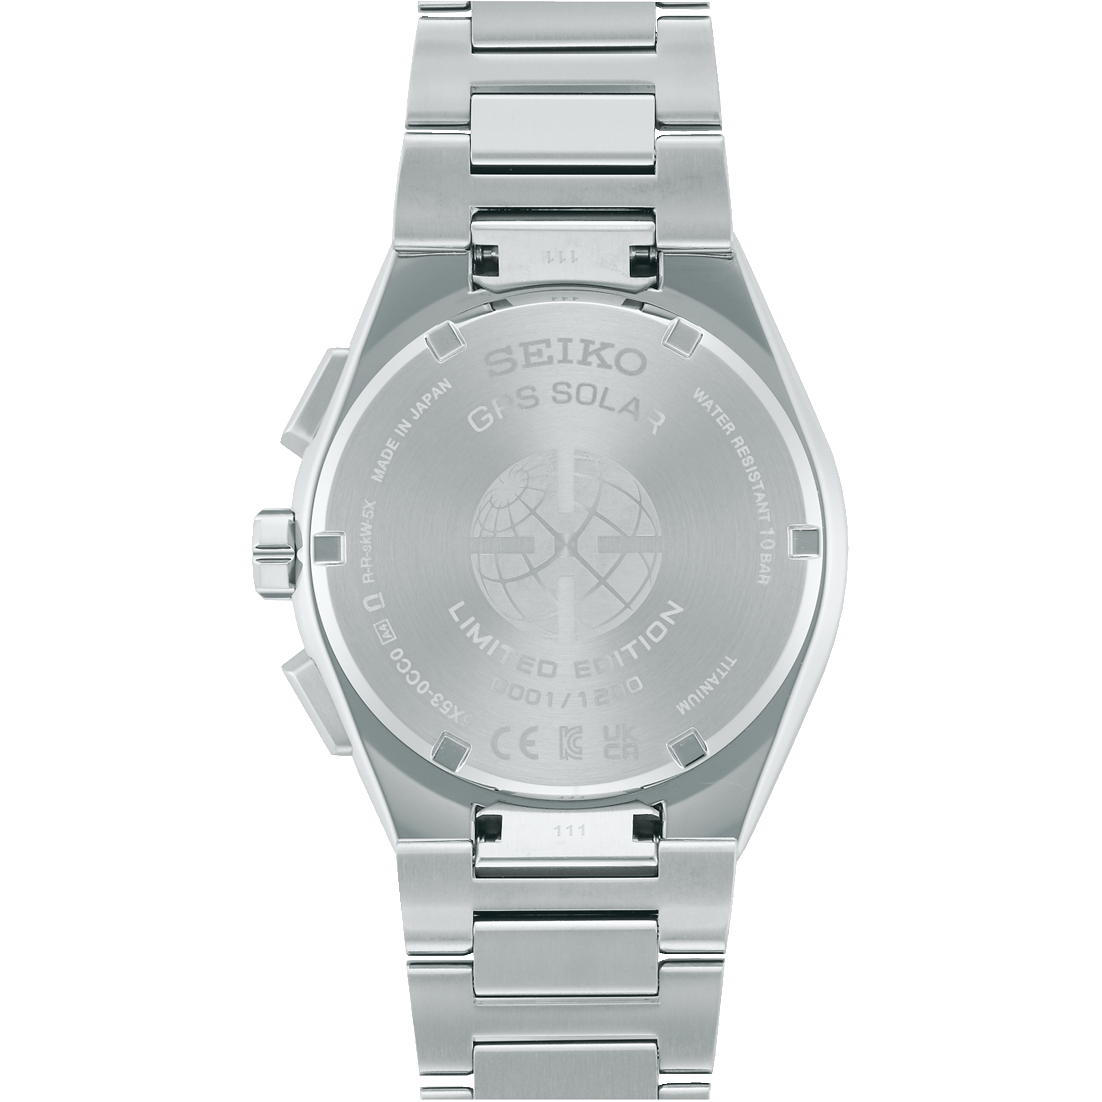 Seiko Seiko Horloge Astron SSH135J1 Limited Edition